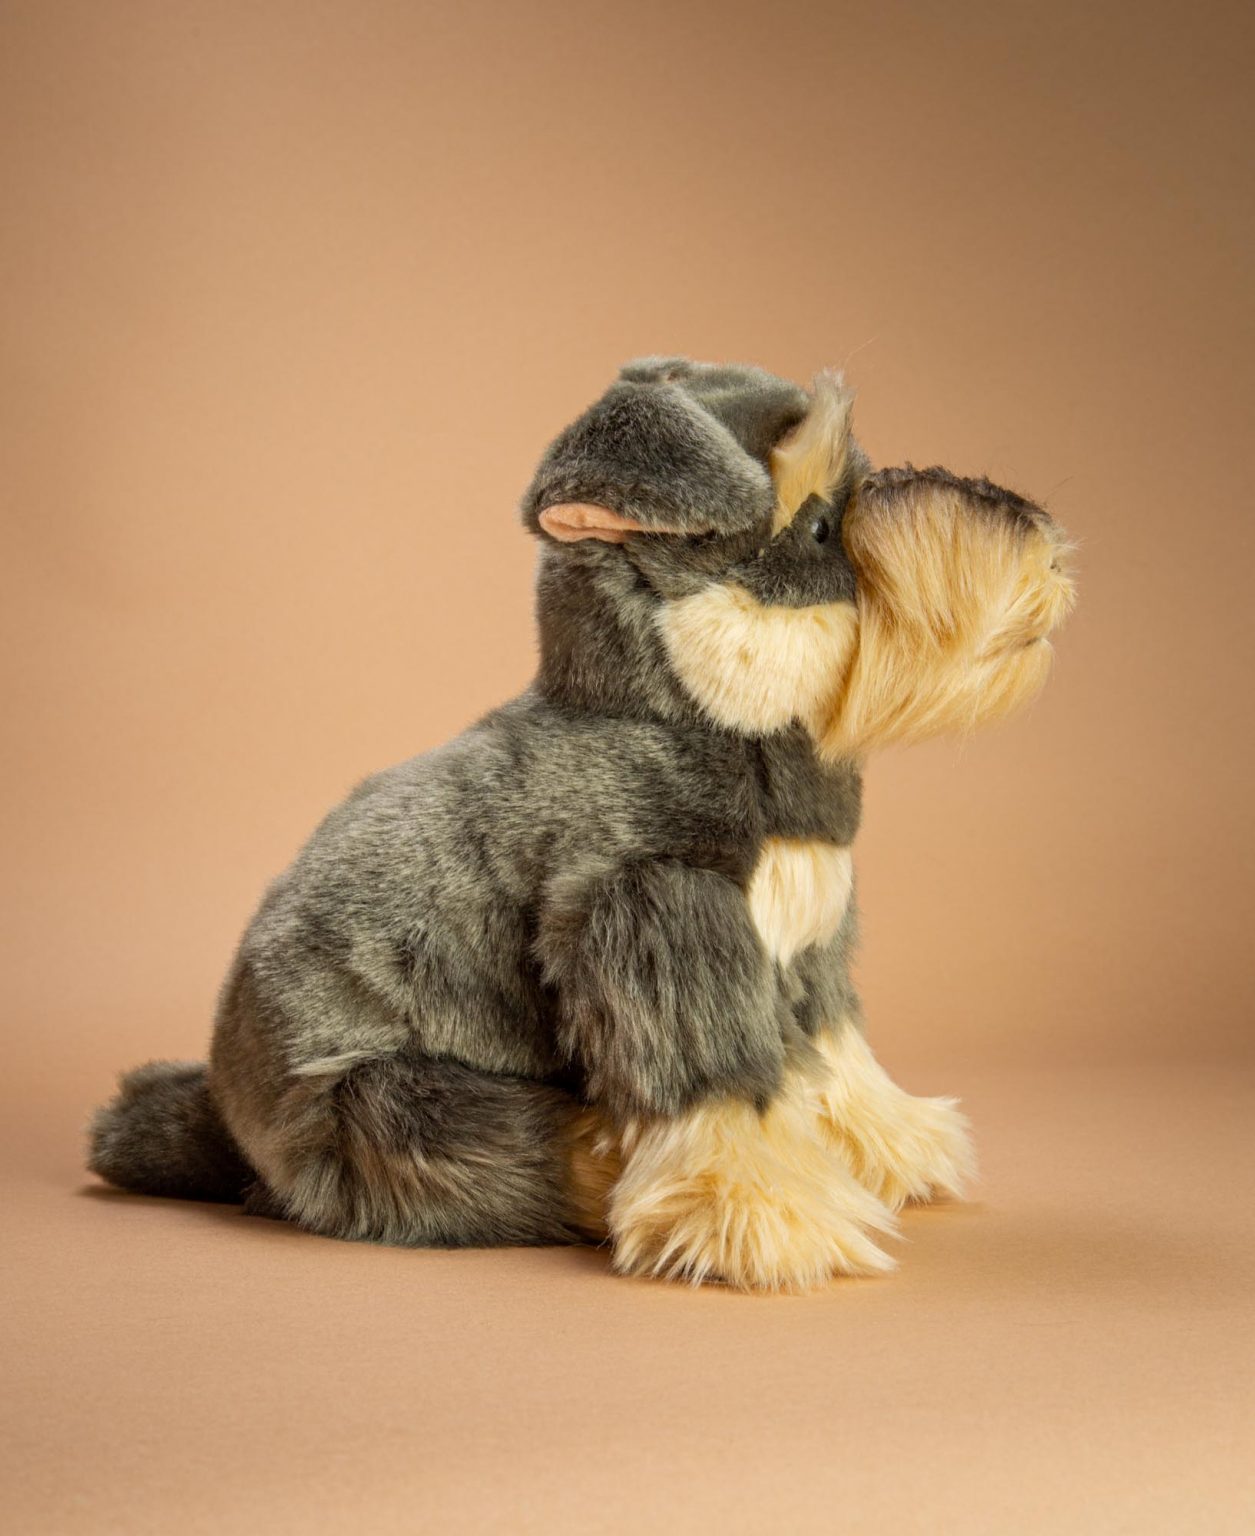 Schnauzer soft toy dog gift - Send a Cuddly